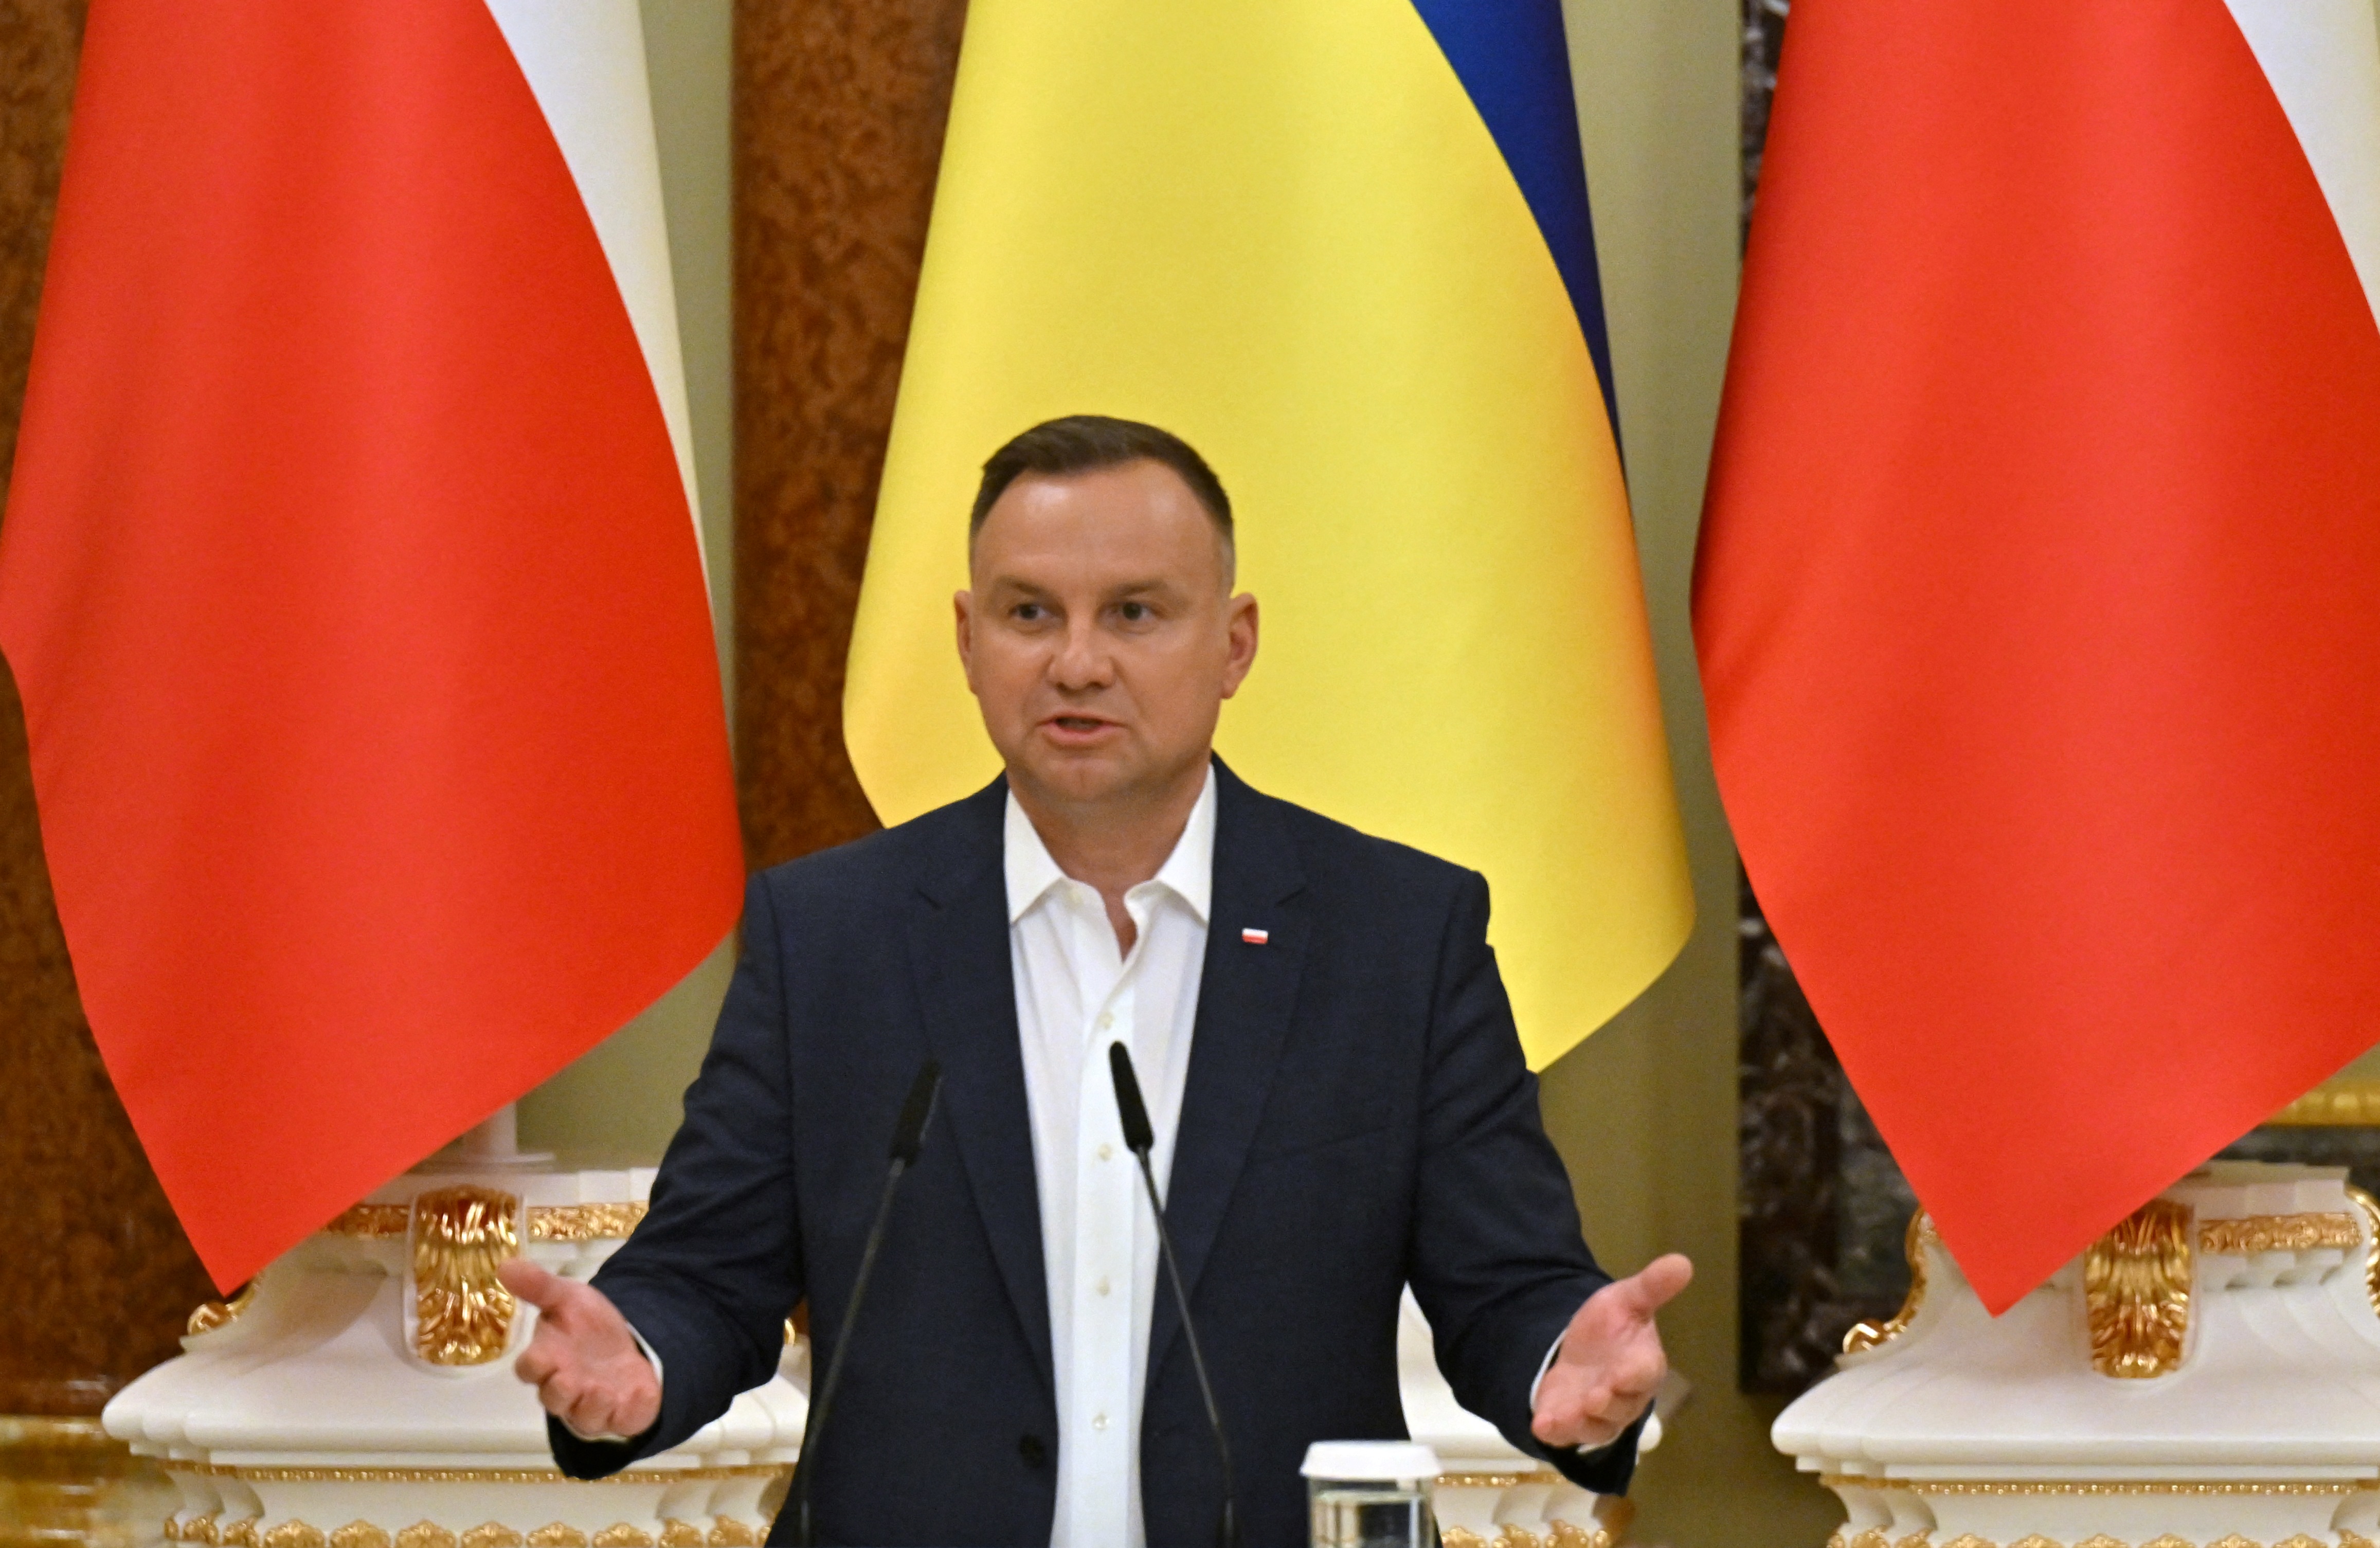 Hacer negocios con Rusia será imposible tras la invasión de Ucrania, afirma presidente polaco